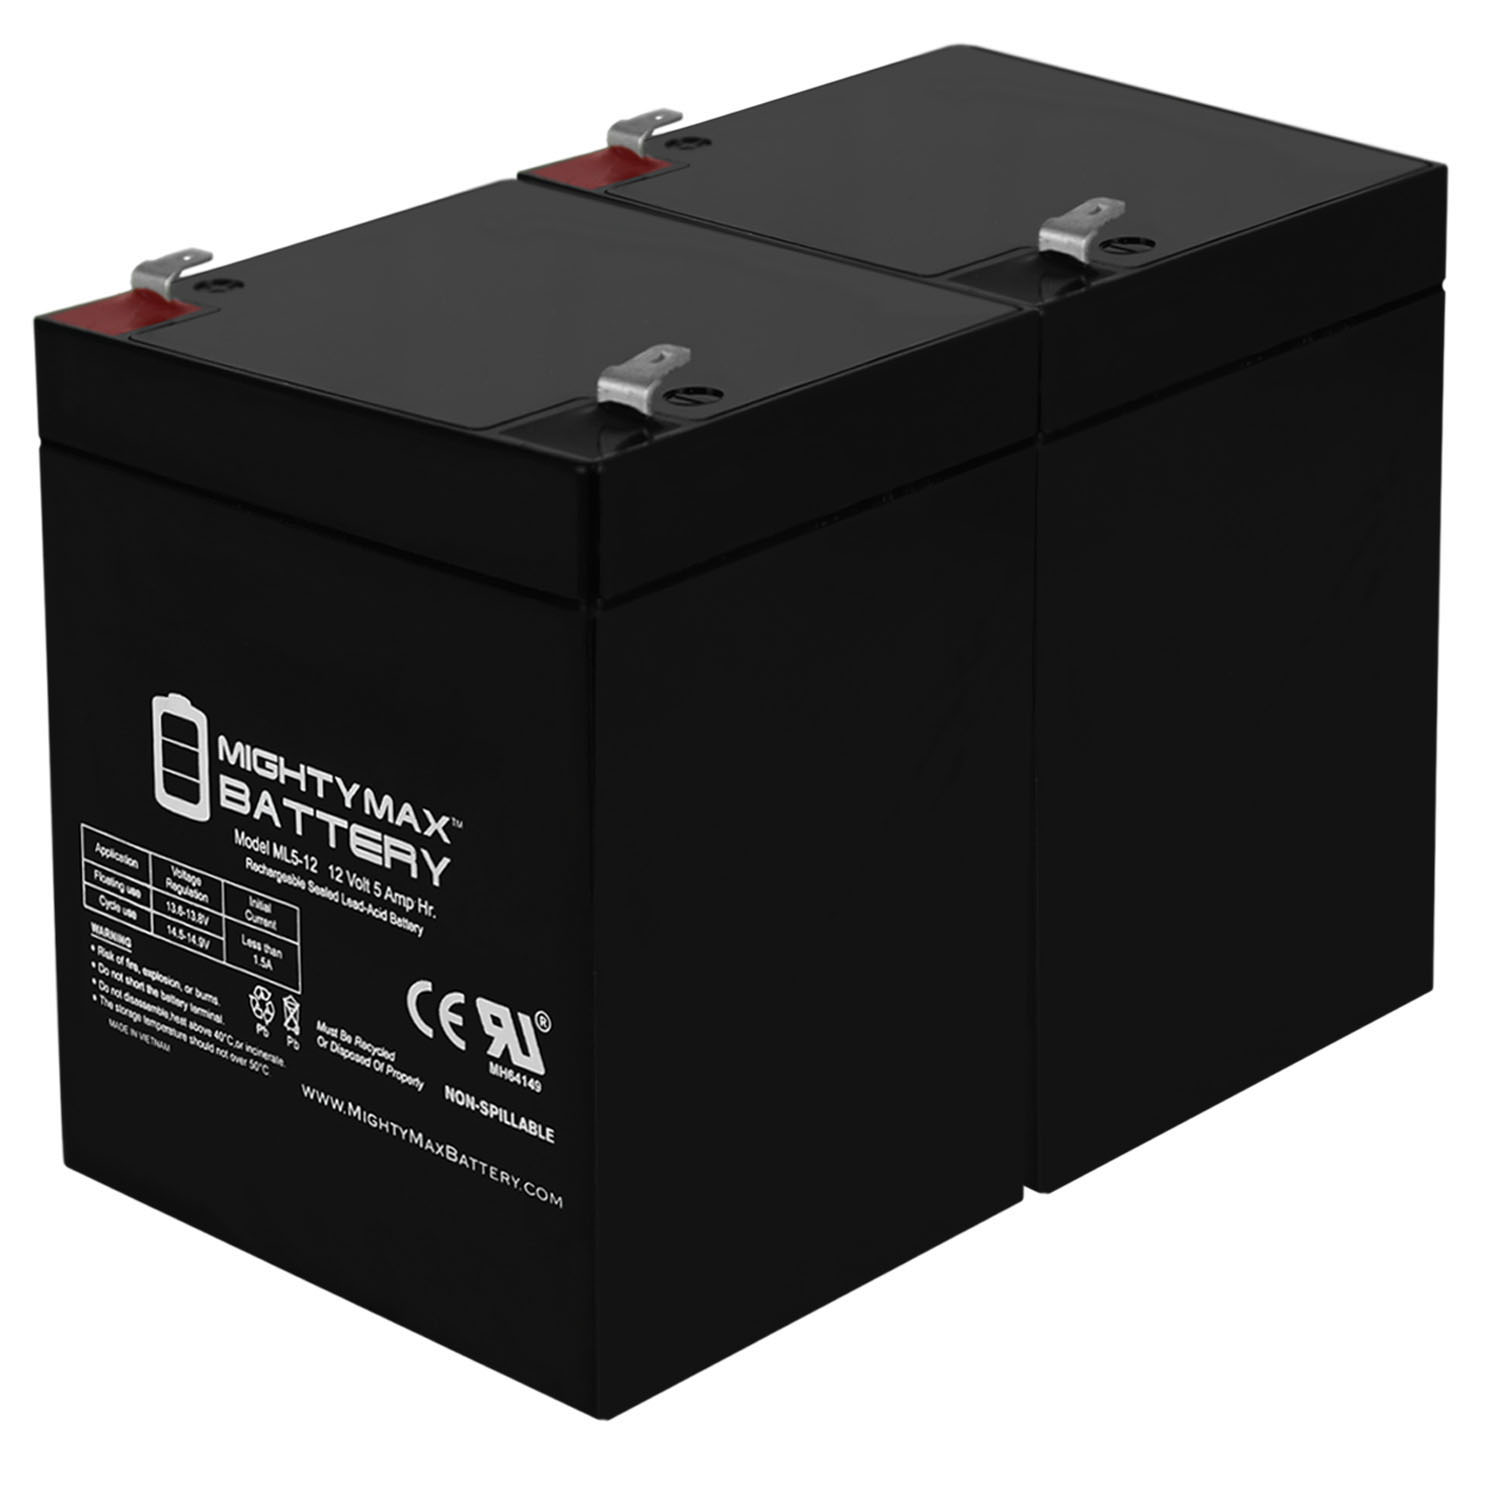 12V 5AH SLA Replacement Battery for Neptune Razor E125 16-37 - 2 Pack